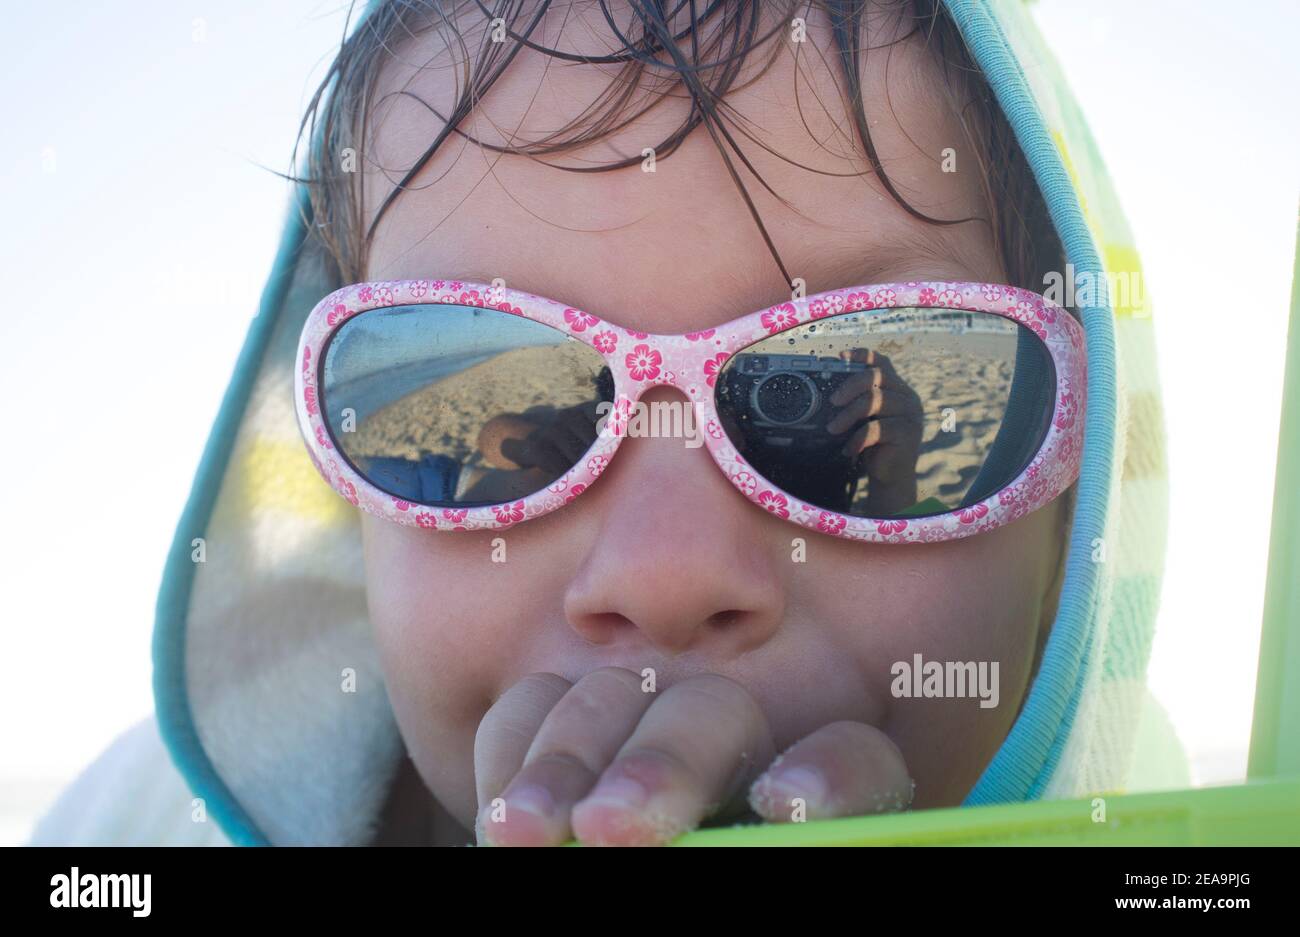 niño de 3 años tomando el sol después de nadar. Está usando una toalla de poncho encapuchada y gafas de sol Foto de stock